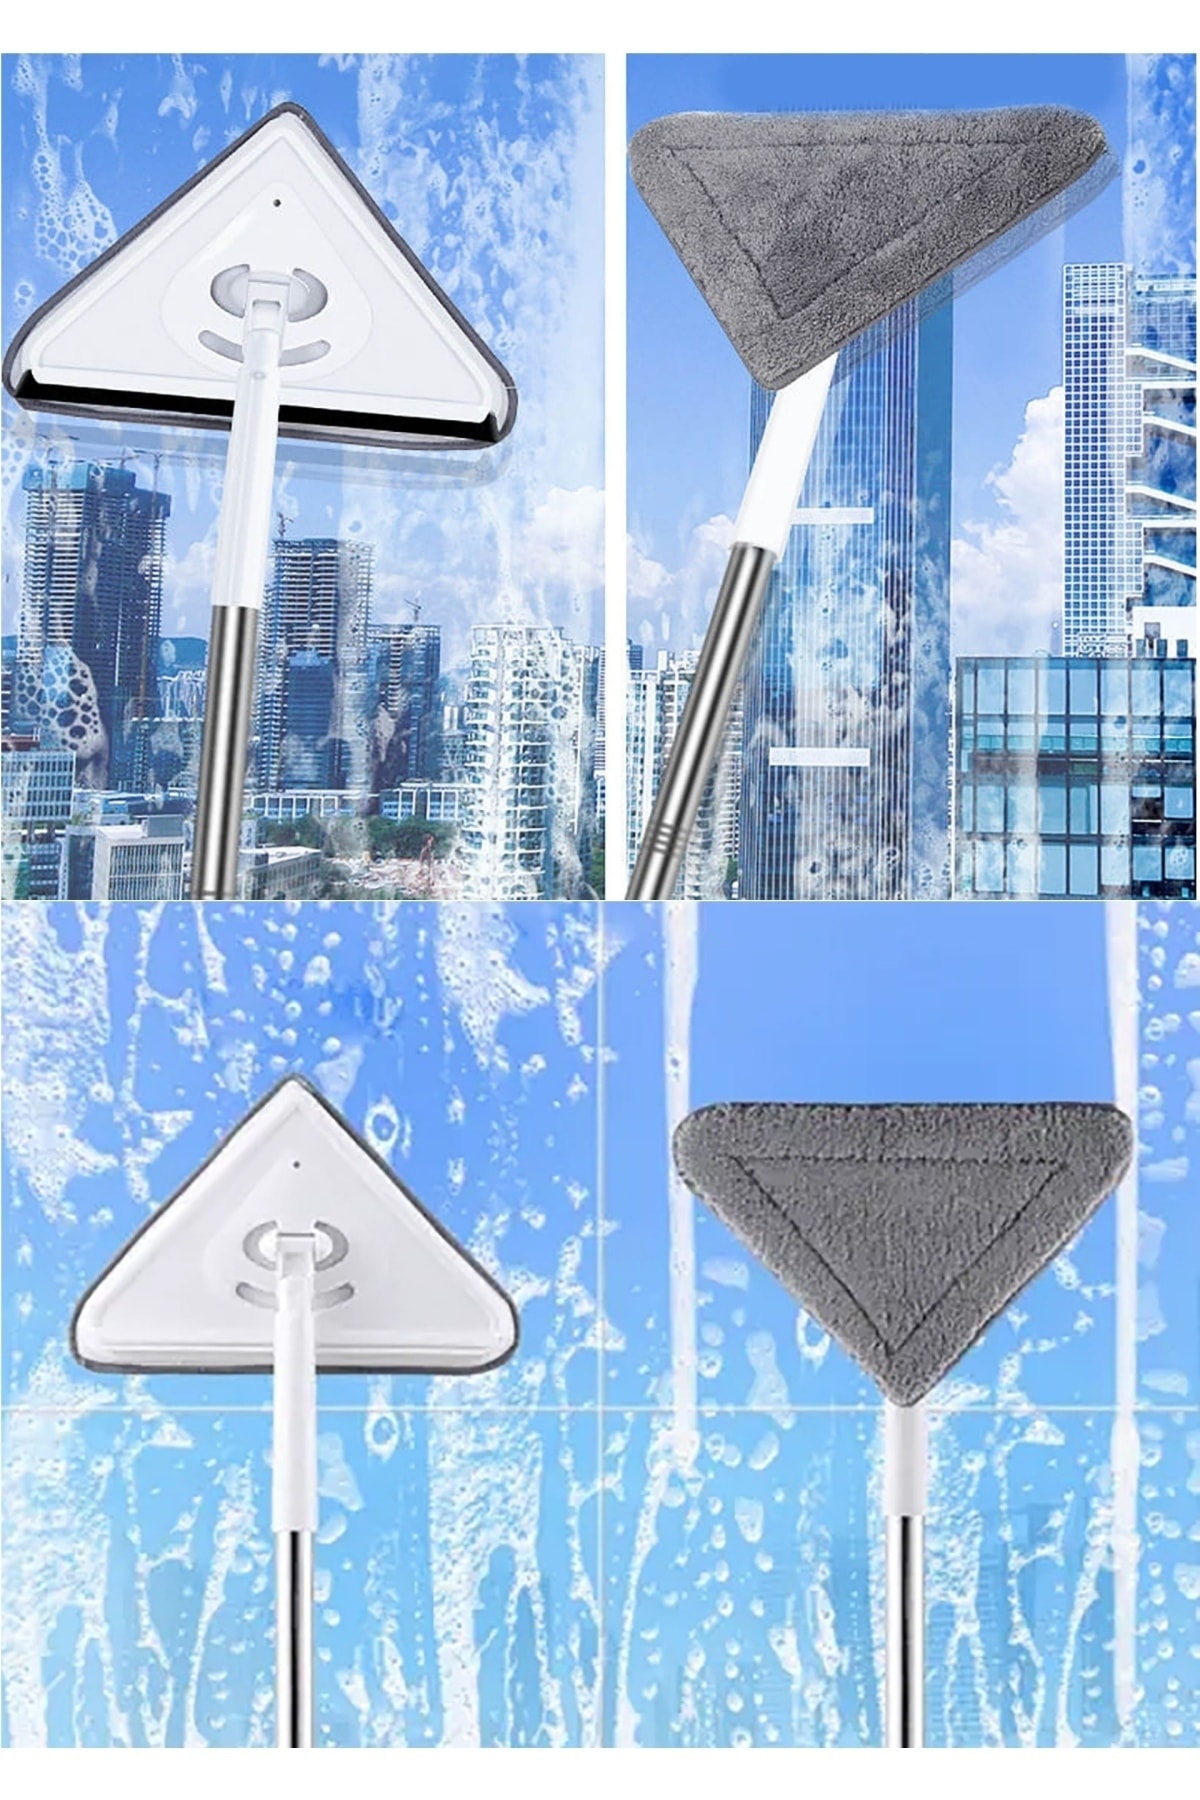 geula LİMPEZA 360ü Derece Dönebilen Çok Fonksiyonlu Üçgen Mop Köşe Kenar Temizleyici Glass Cleaning Kit AN10508